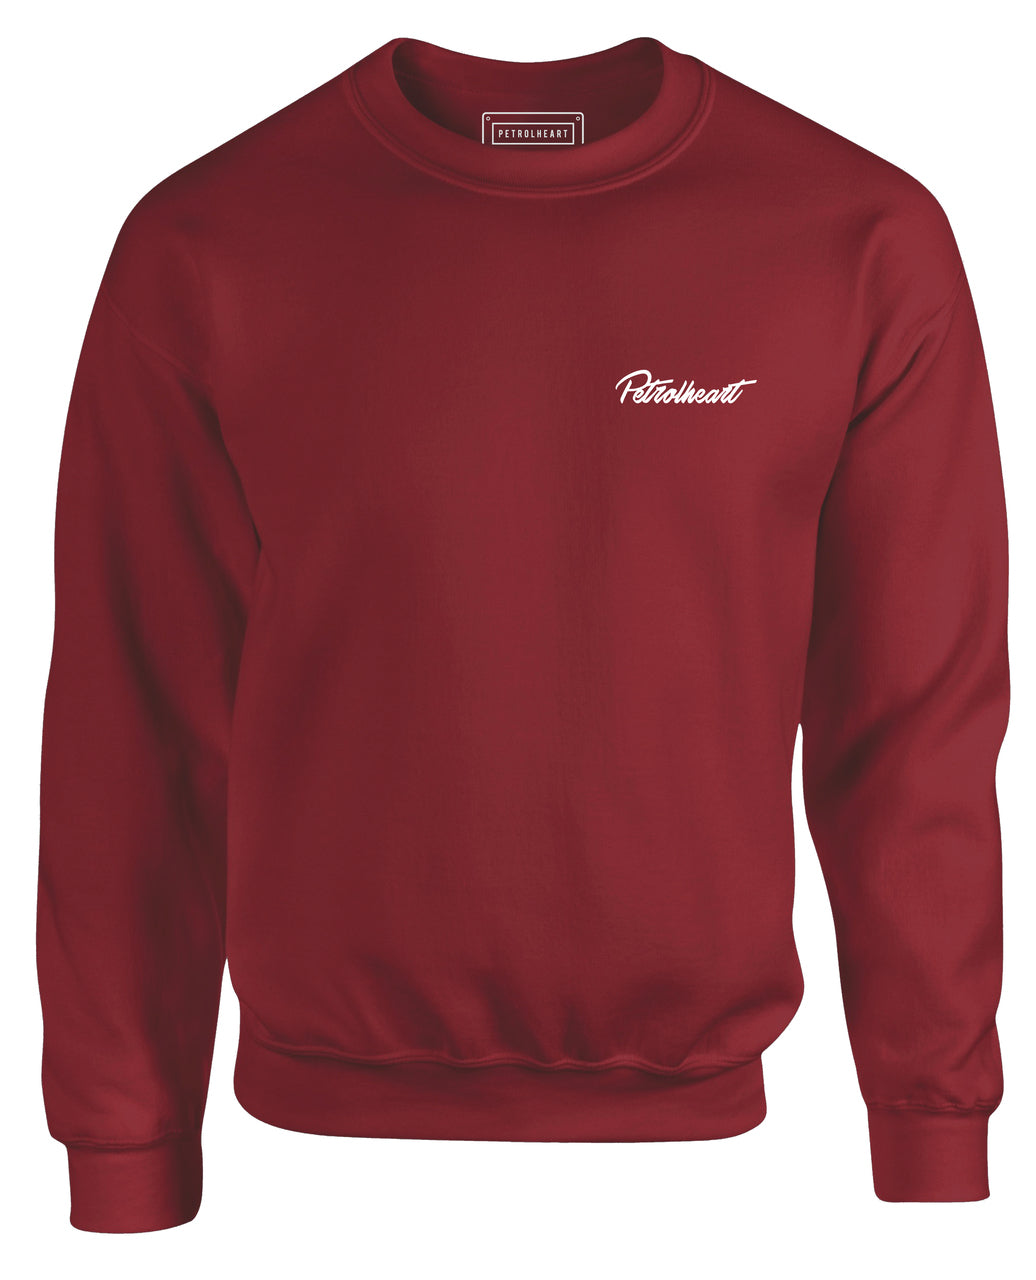 Petrolheart Classic Sweatshirt